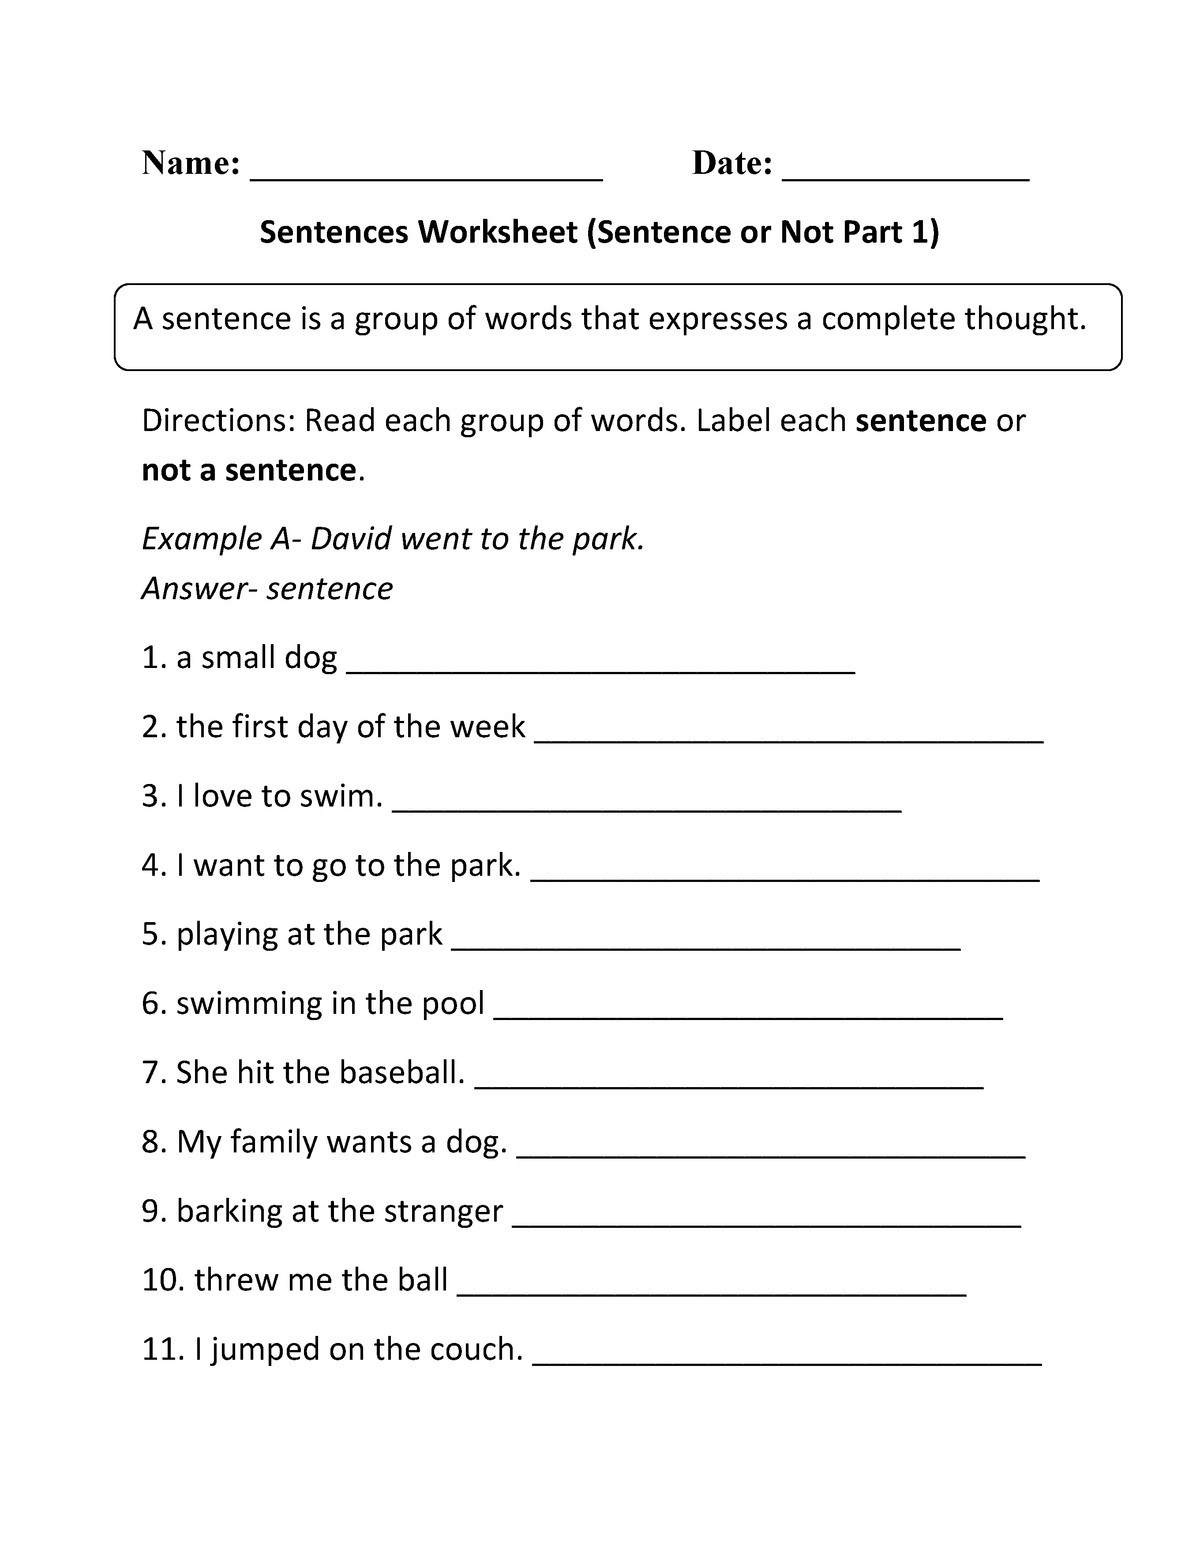 Sentence Worksheet For Grade 2 Name Date Sentences